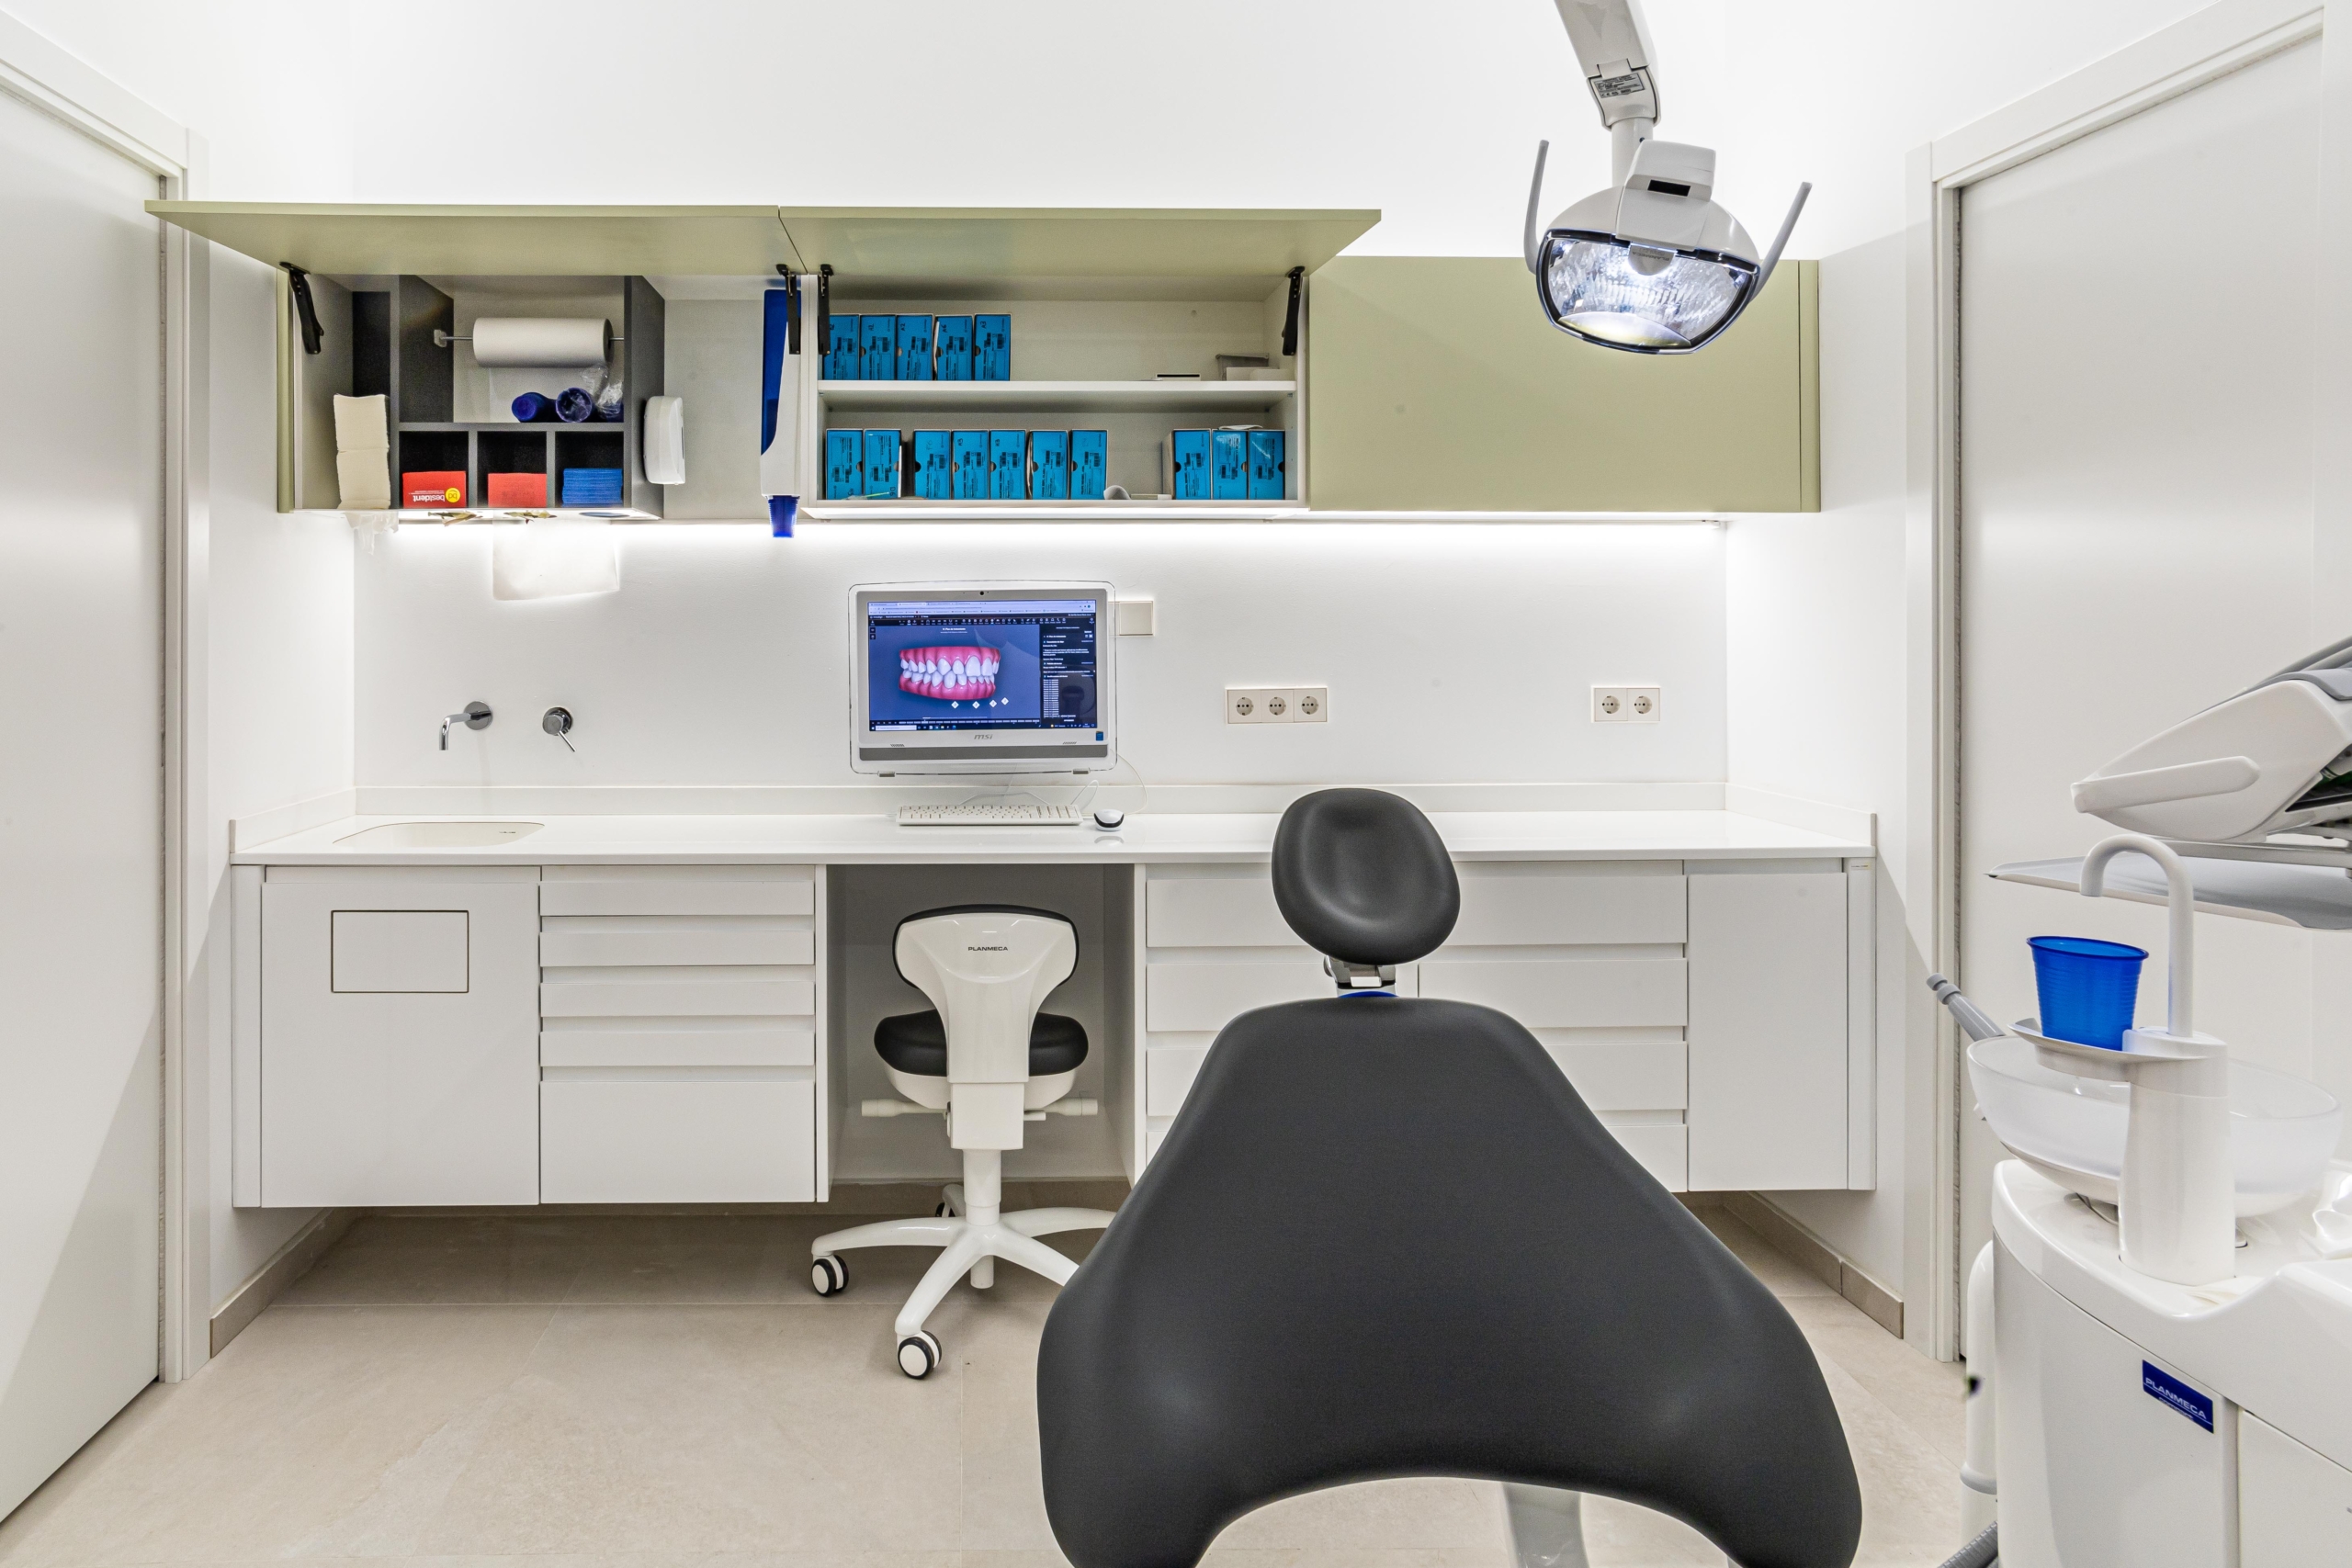 Mobiliario protesico con encimera blanca, mueble dispensador, ordenador y silla odontologica con acabado en negro